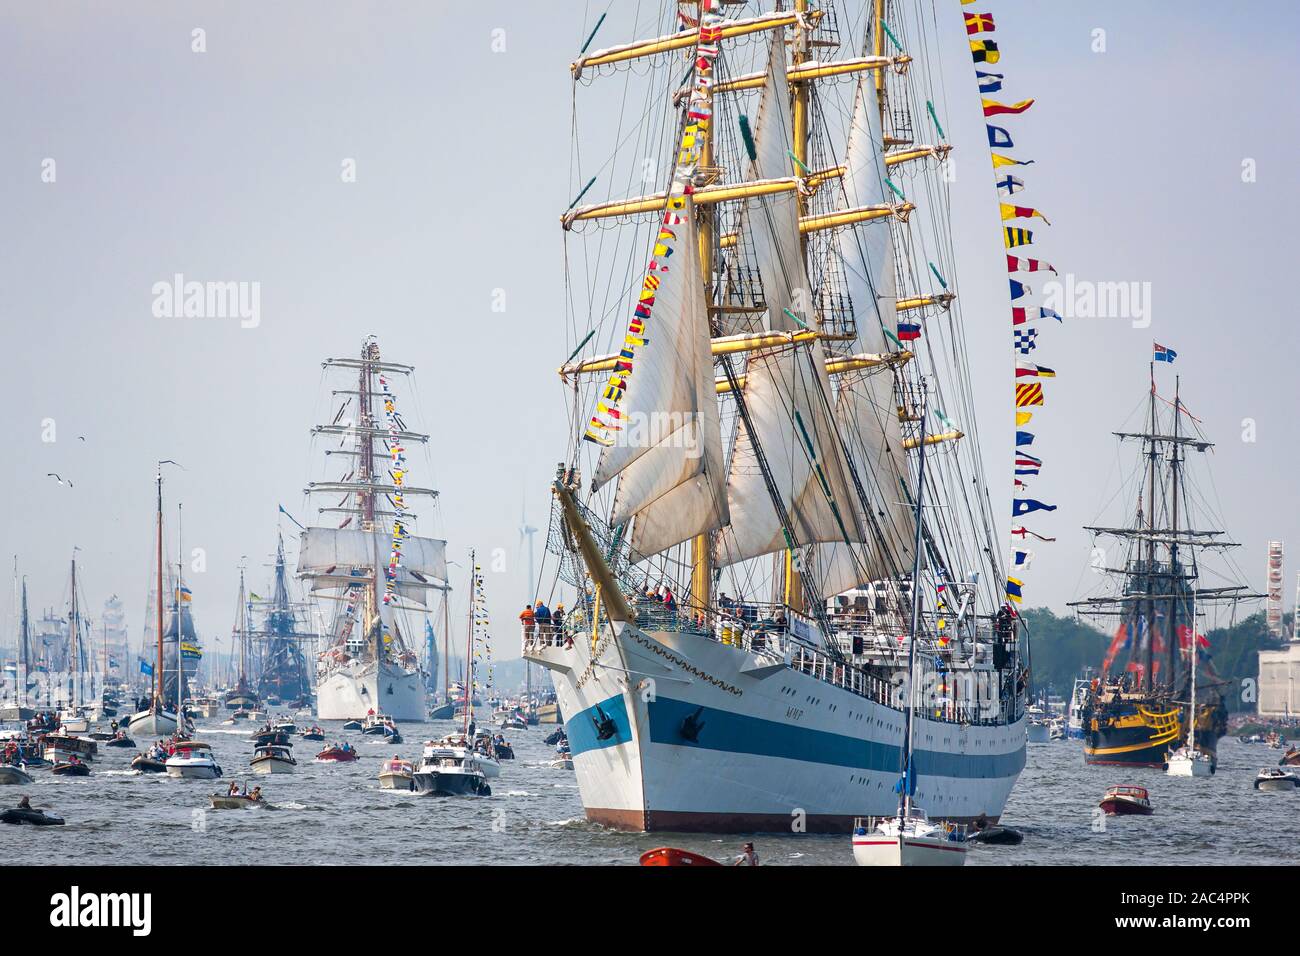 Russische STS mir, Мир, bedeutet Frieden, Dreimast-Großschiff aus Russland segelt nach Amsterdam während der Amsterdam Sail 2015 Tall Ships Veranstaltung. Stockfoto